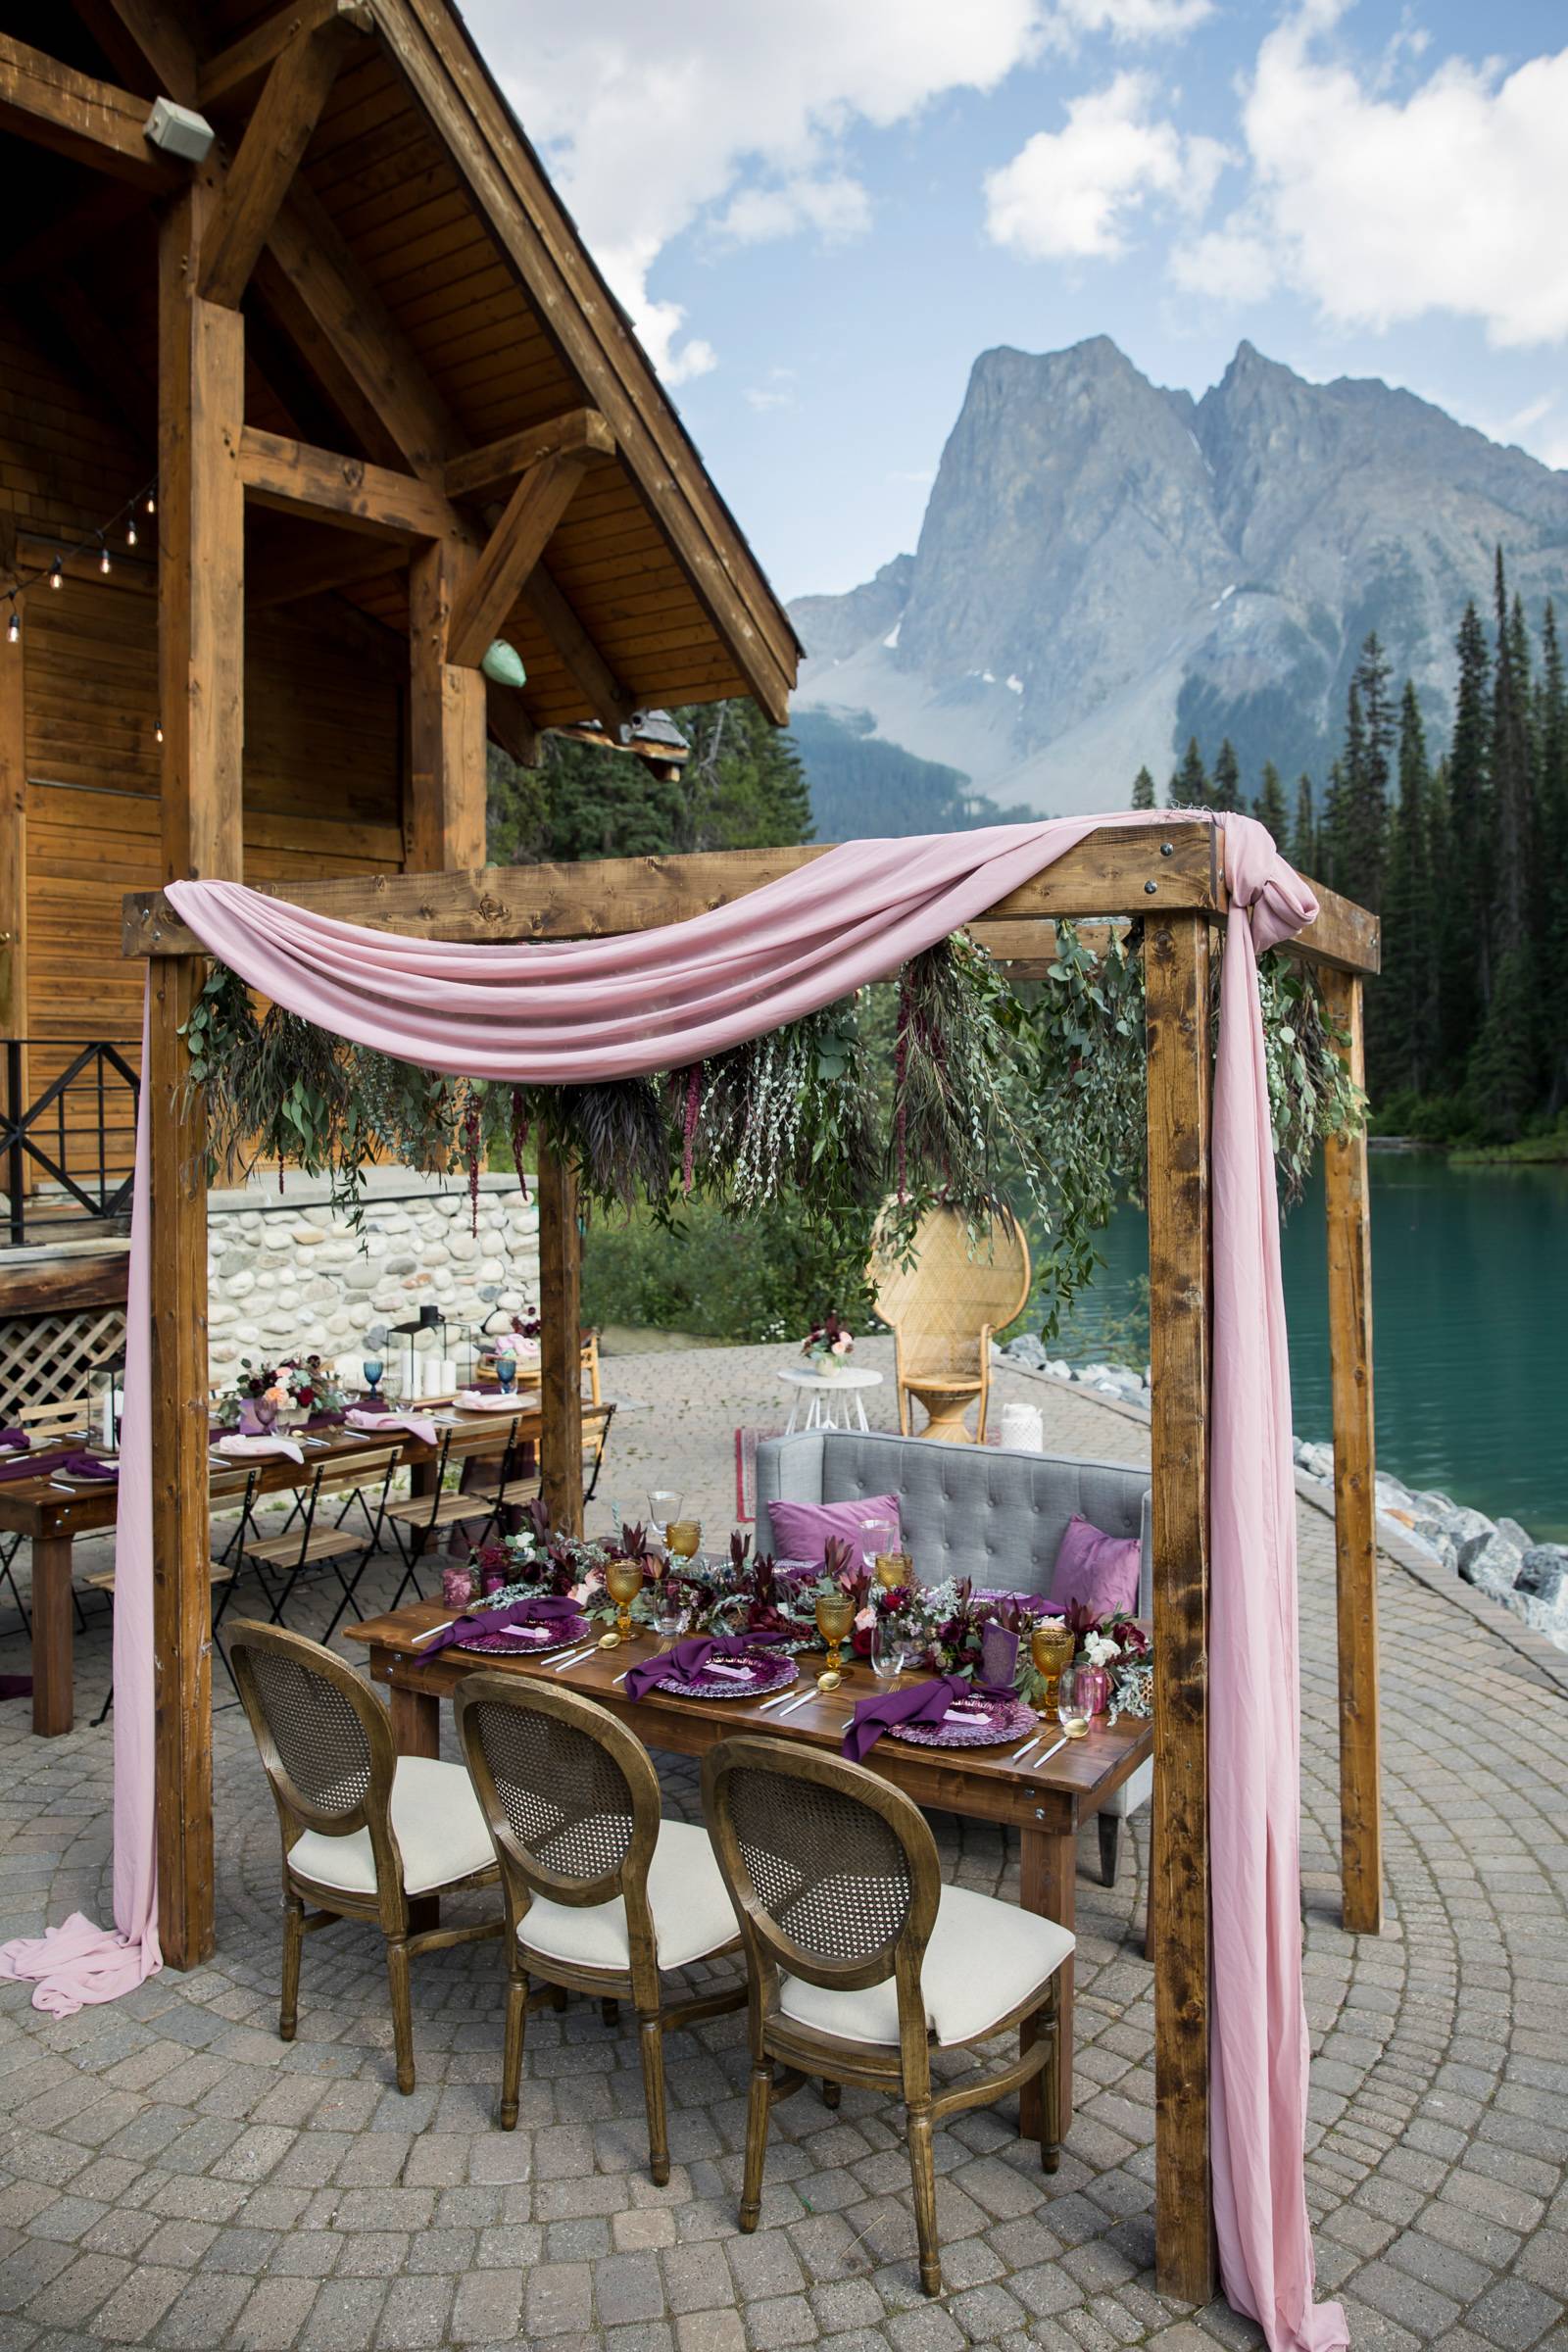 Emerald Lake Lodge Wedding, Mountain Wedding, Summer Mountain Wedding, Banff Wedding Photographer, W